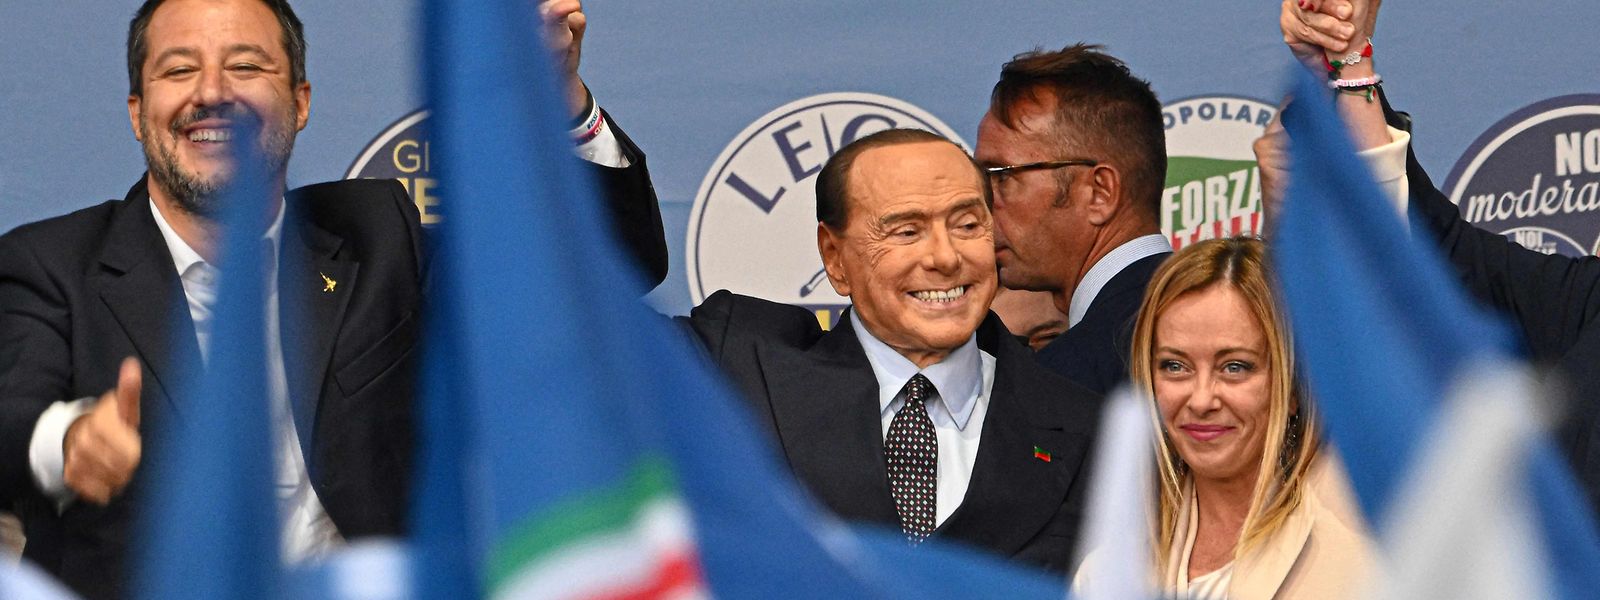 Das Rechtsbündnis rund um Matteo Salvini (l.), Silvio Berlusconi (M.) und Giorgia Meloni ist klarer Favorit, nur noch eine Riesenüberraschung kann einen Sieg verhindern.